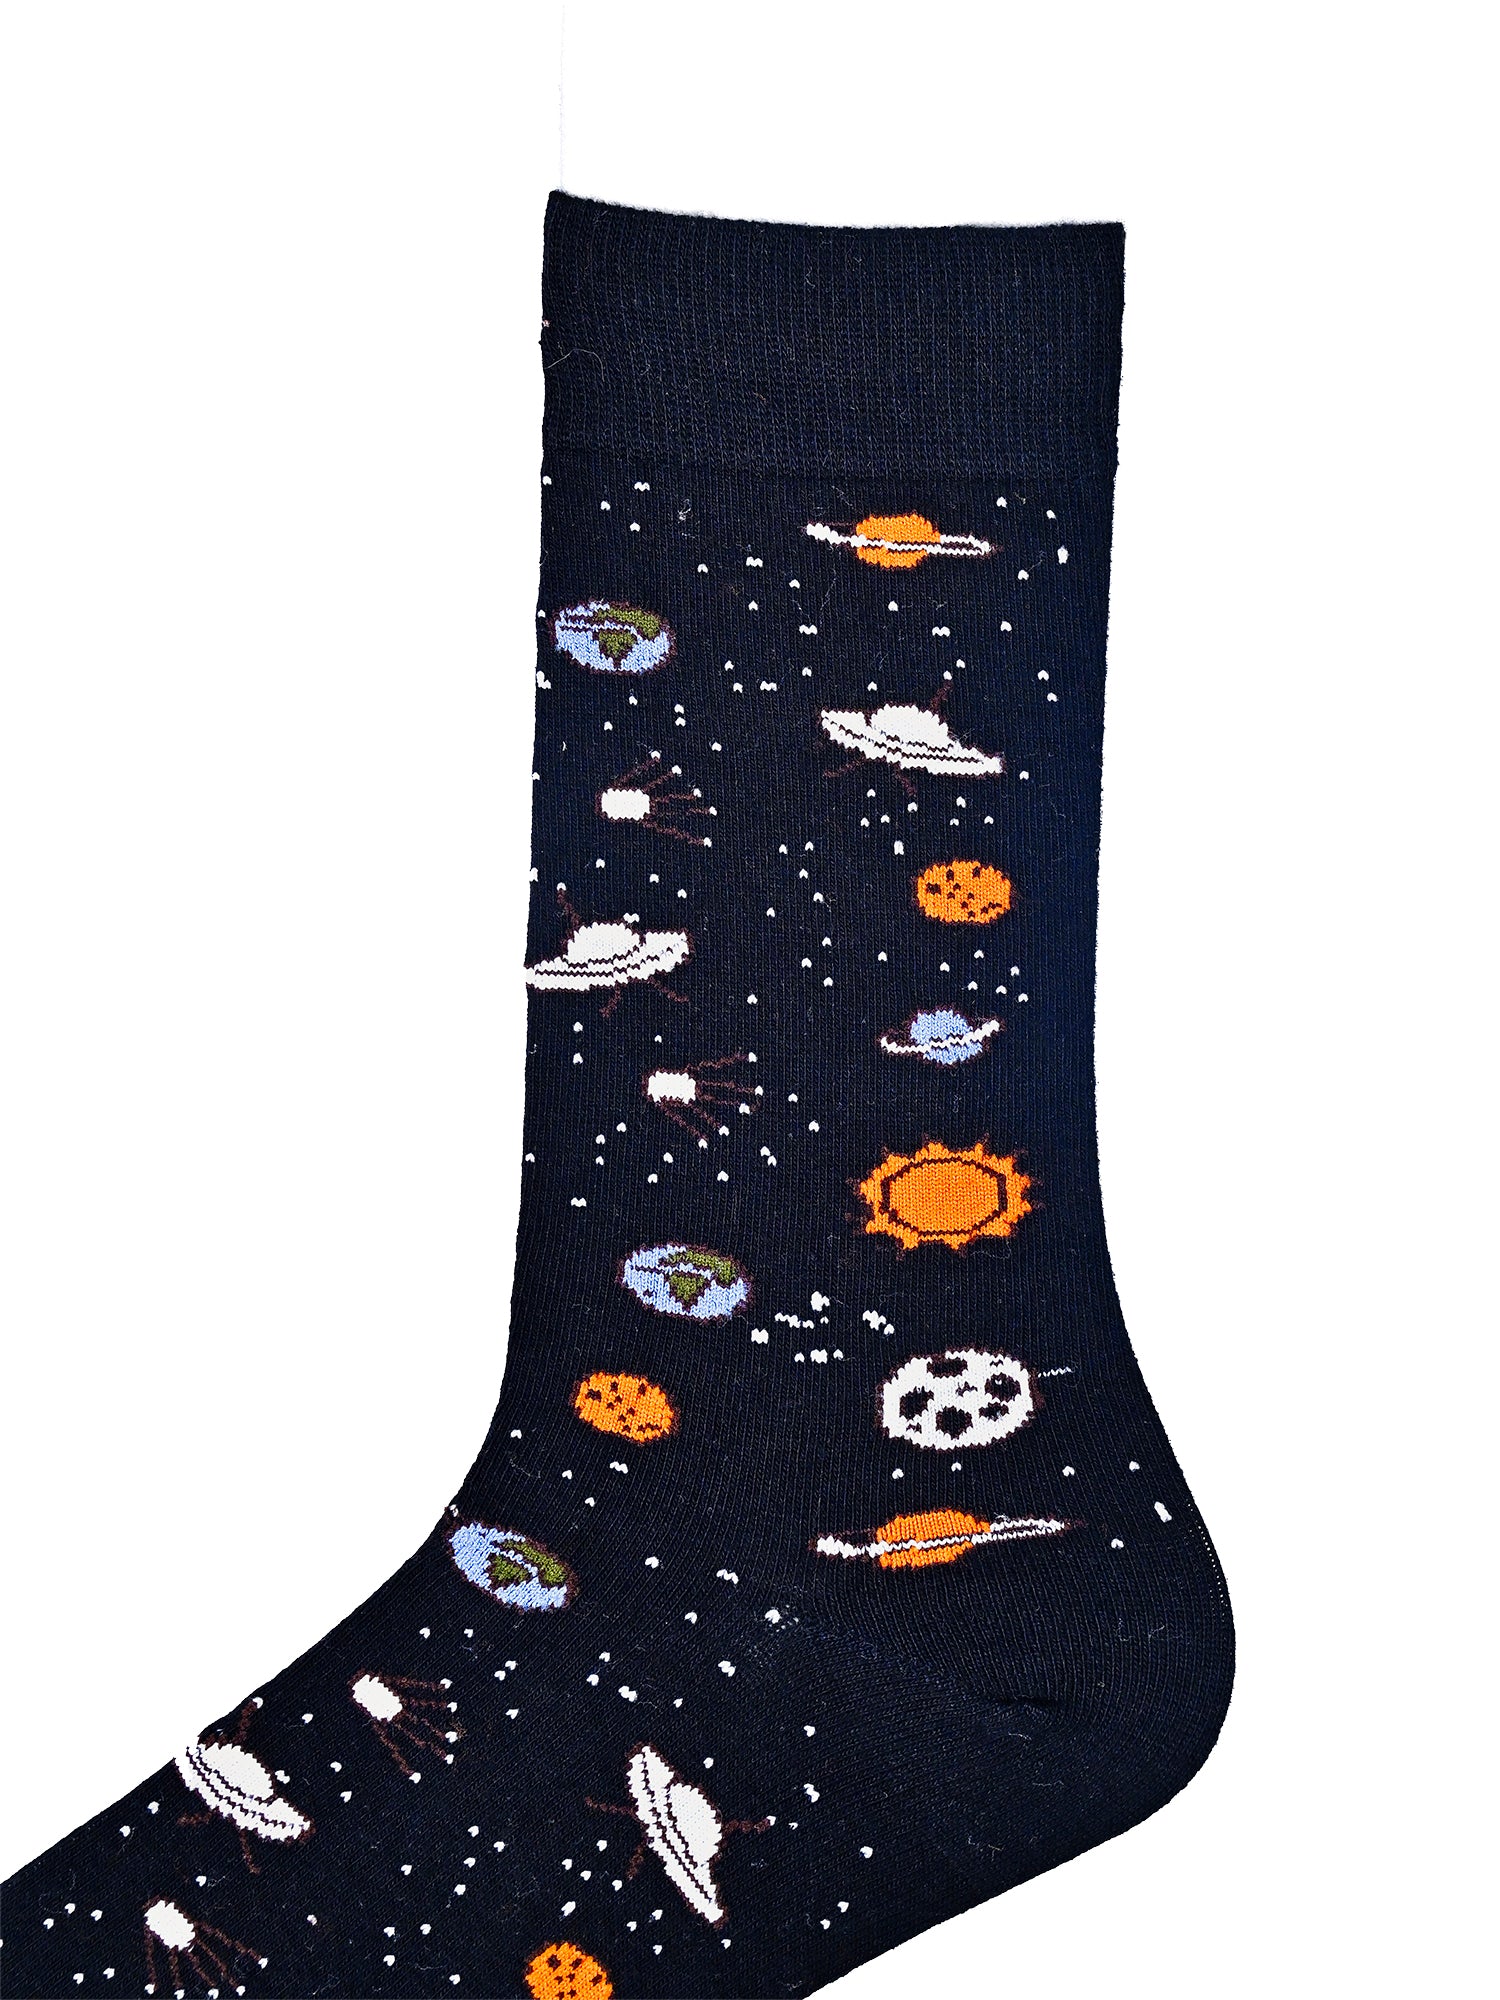 Spaceman | Black Mid-Calf Socks For Men | 1 Pair